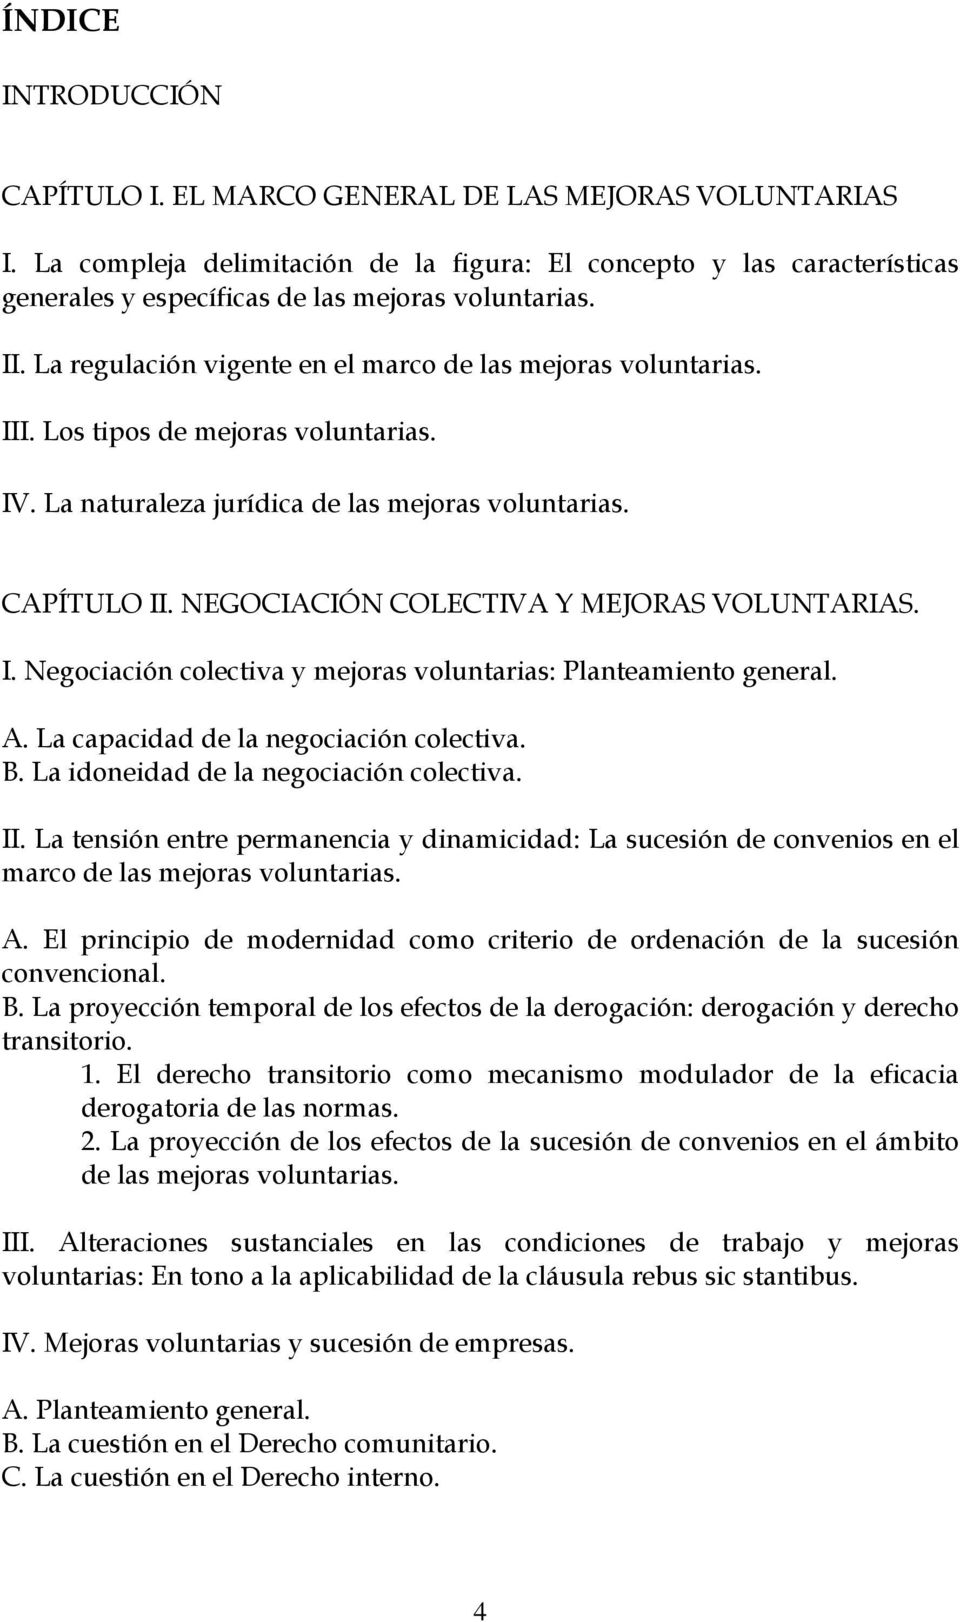 Los tipos de mejoras voluntarias. IV. La naturaleza jurídica de las mejoras voluntarias. CAPÍTULO II. NEGOCIACIÓN COLECTIVA Y MEJORAS VOLUNTARIAS. I. Negociación colectiva y mejoras voluntarias: Planteamiento general.